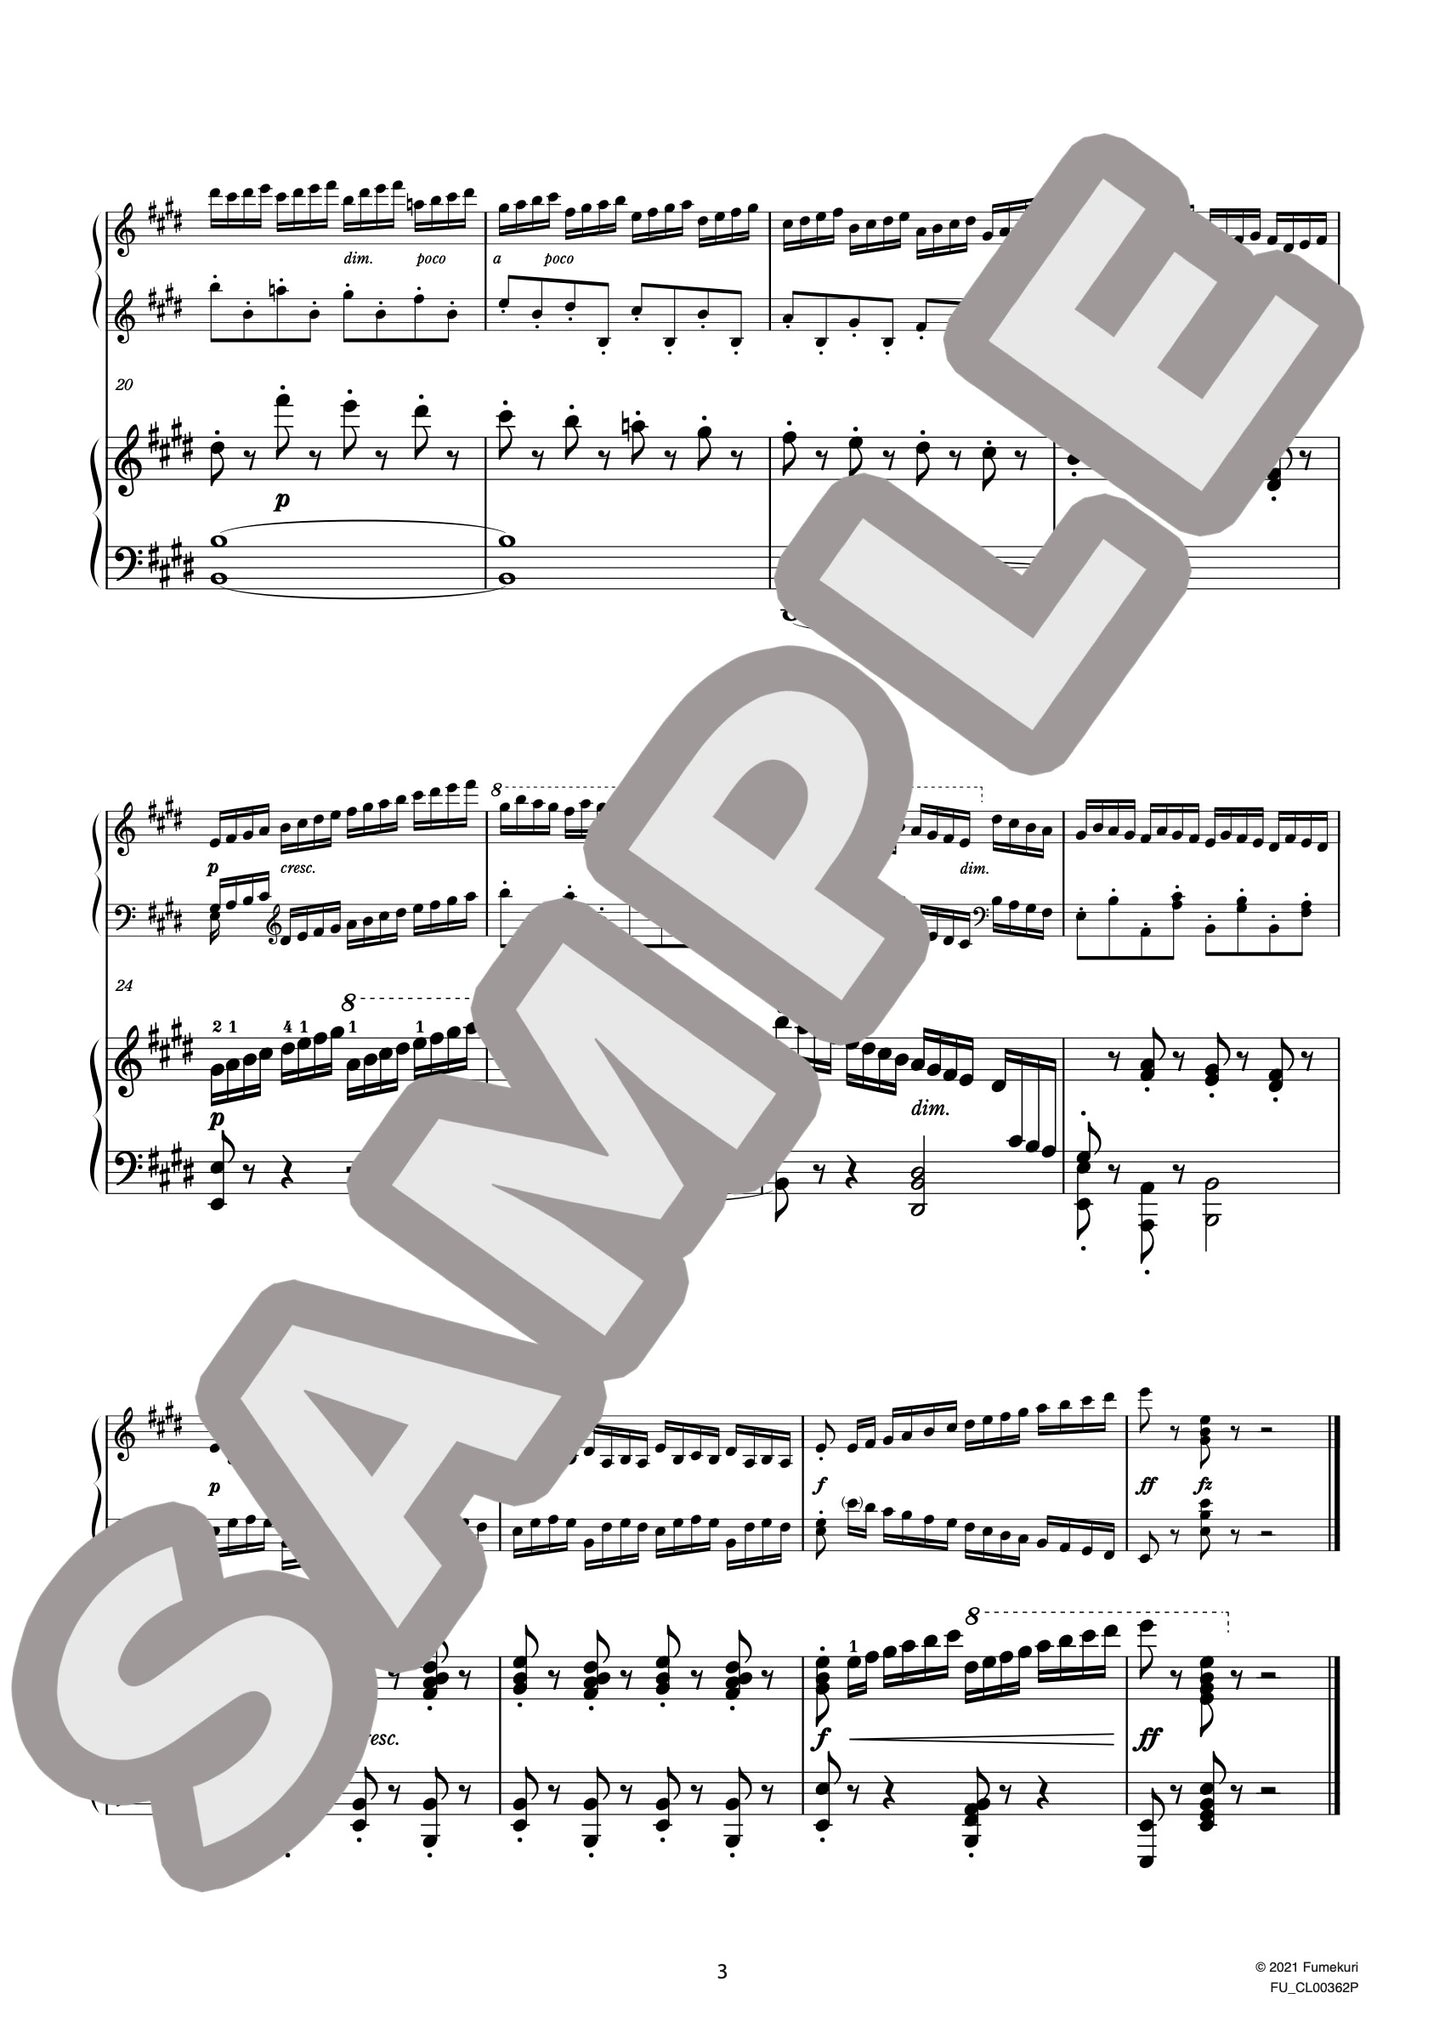 2台のピアノのための速度練習曲（40番練習曲）作品299b 第29番（CZERNY) / クラシック・オリジナル楽曲【中上級】